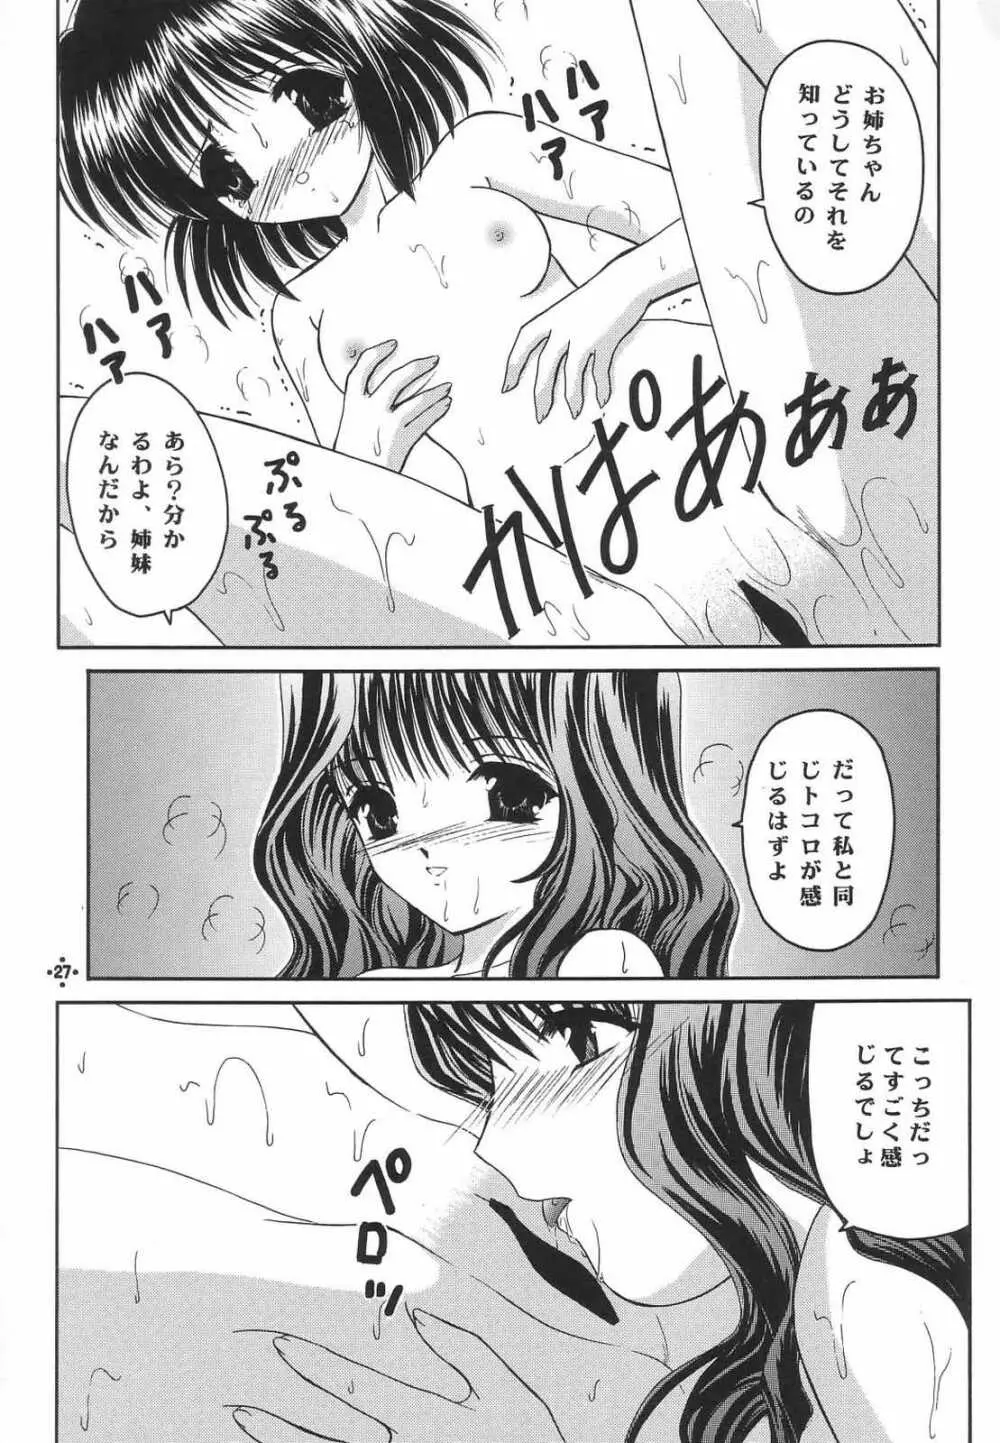 Shimensoka 8 26ページ